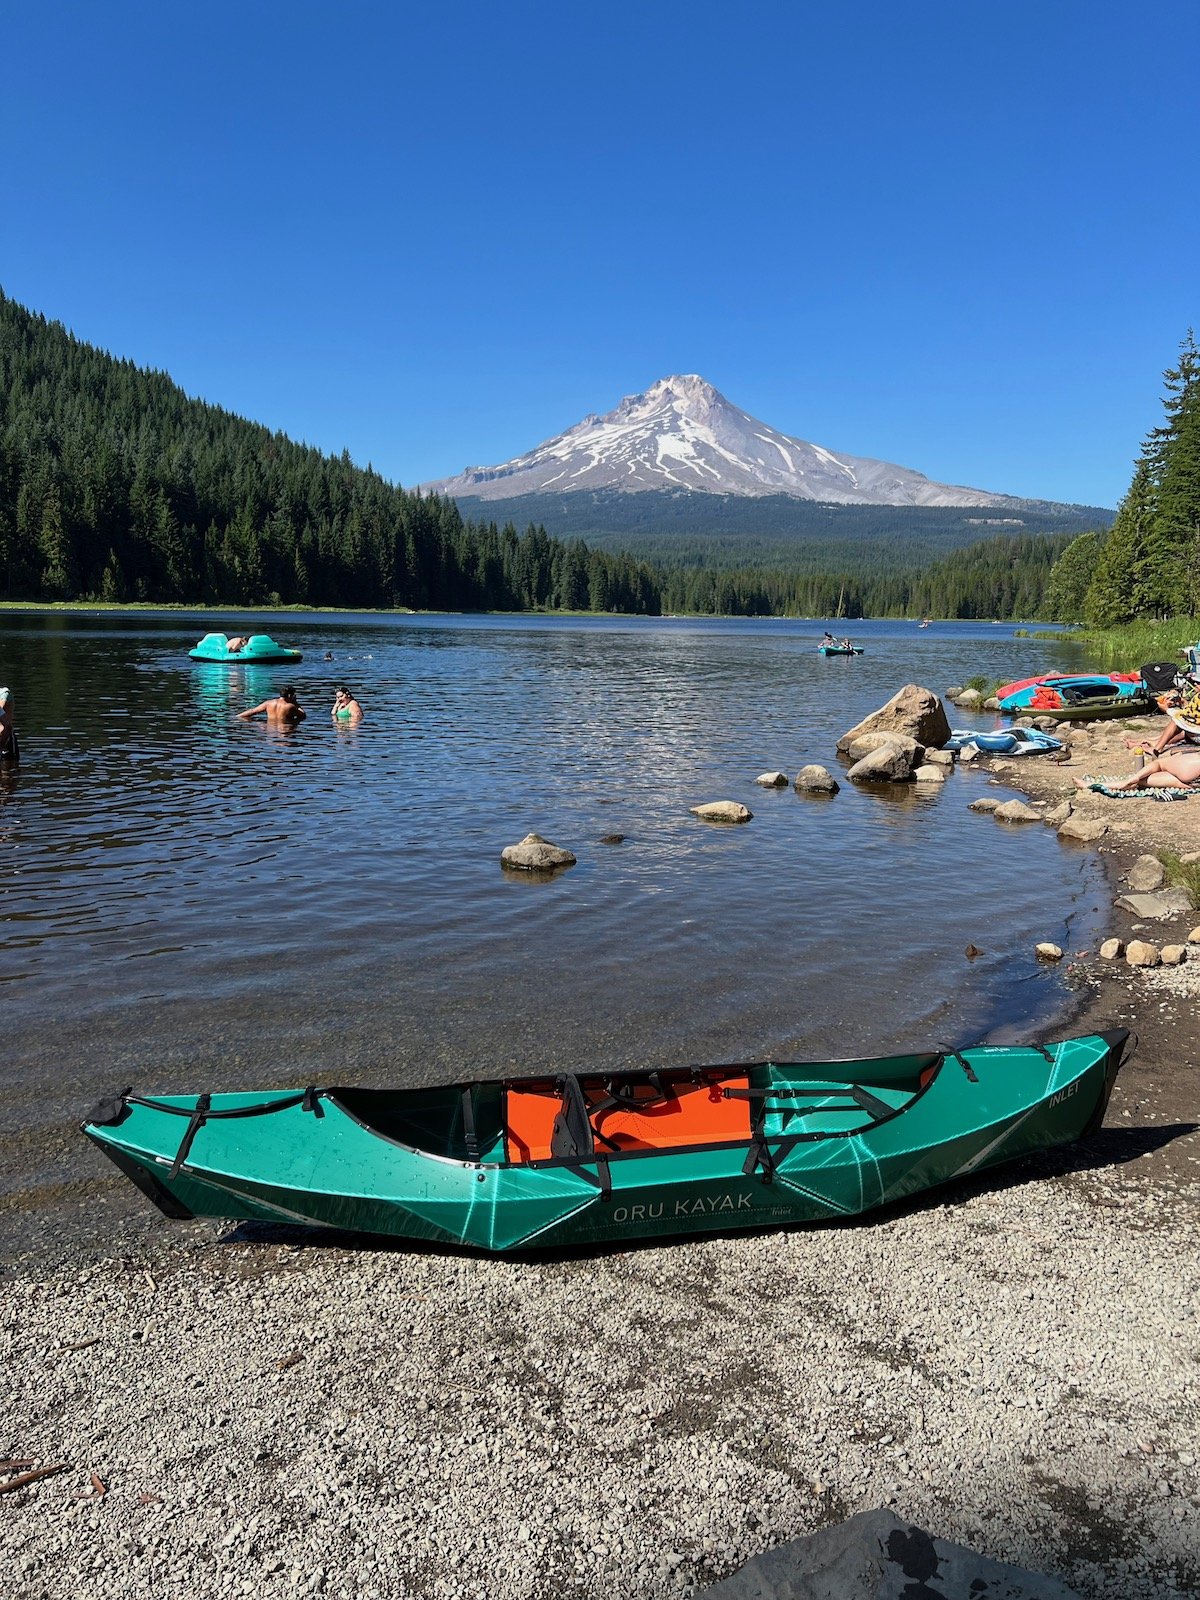 Oru Folding Kayaks: Your Companion to Kayaking Mt. Hood's Alpine Lakes